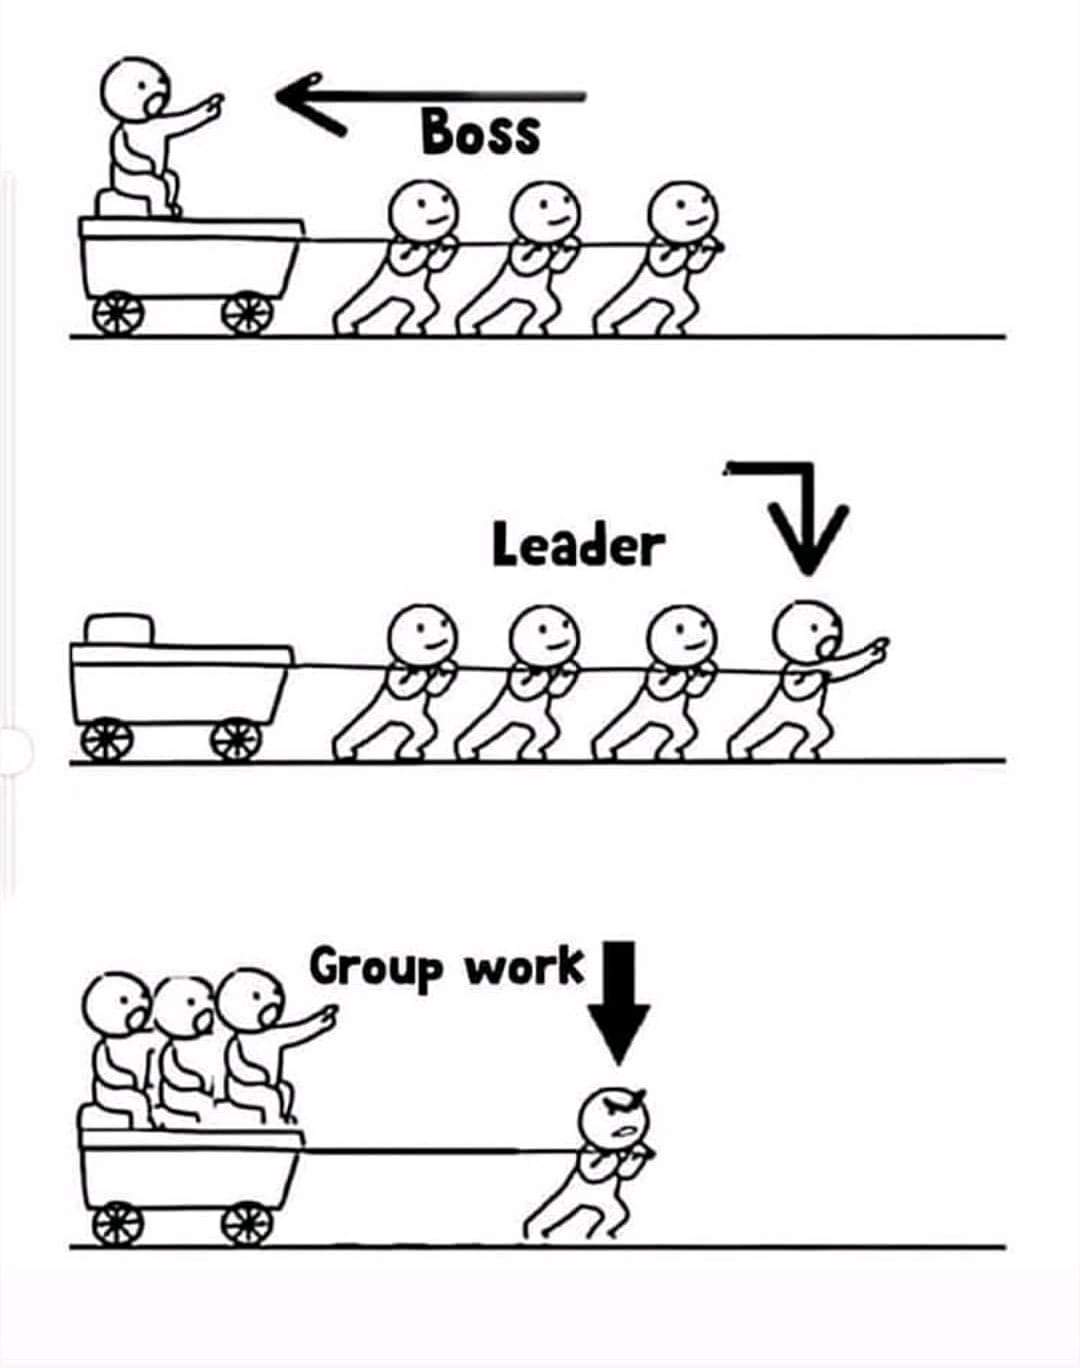 boss_leader_group_work.jpg